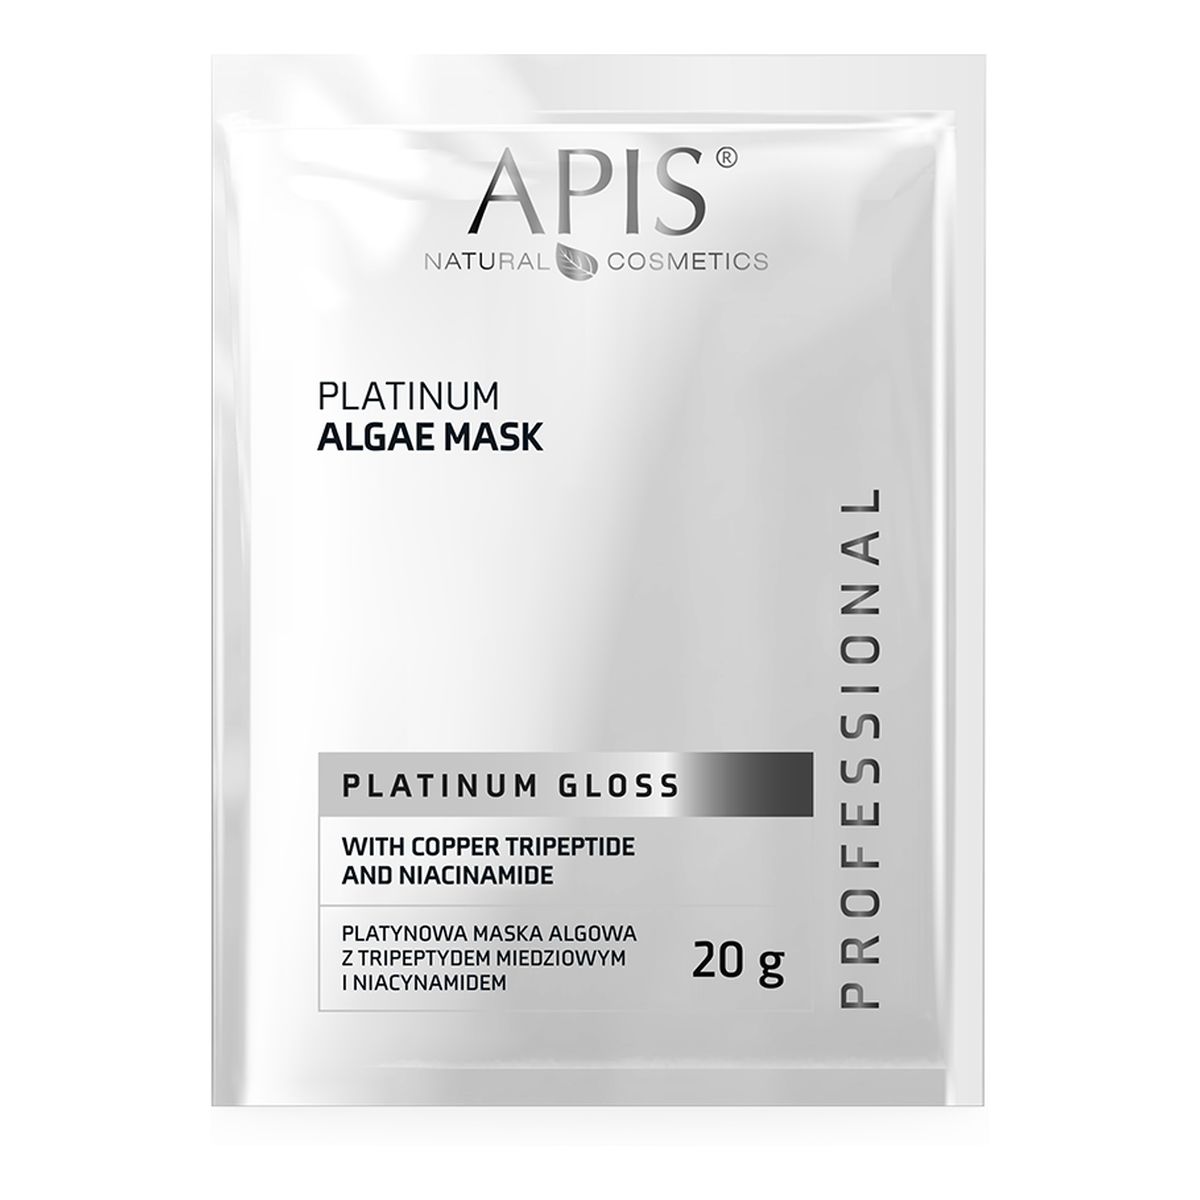 Apis Platinum gloss platynowa maska algowa z tripeptydem miedziowym i niacynamidem 20g 20g